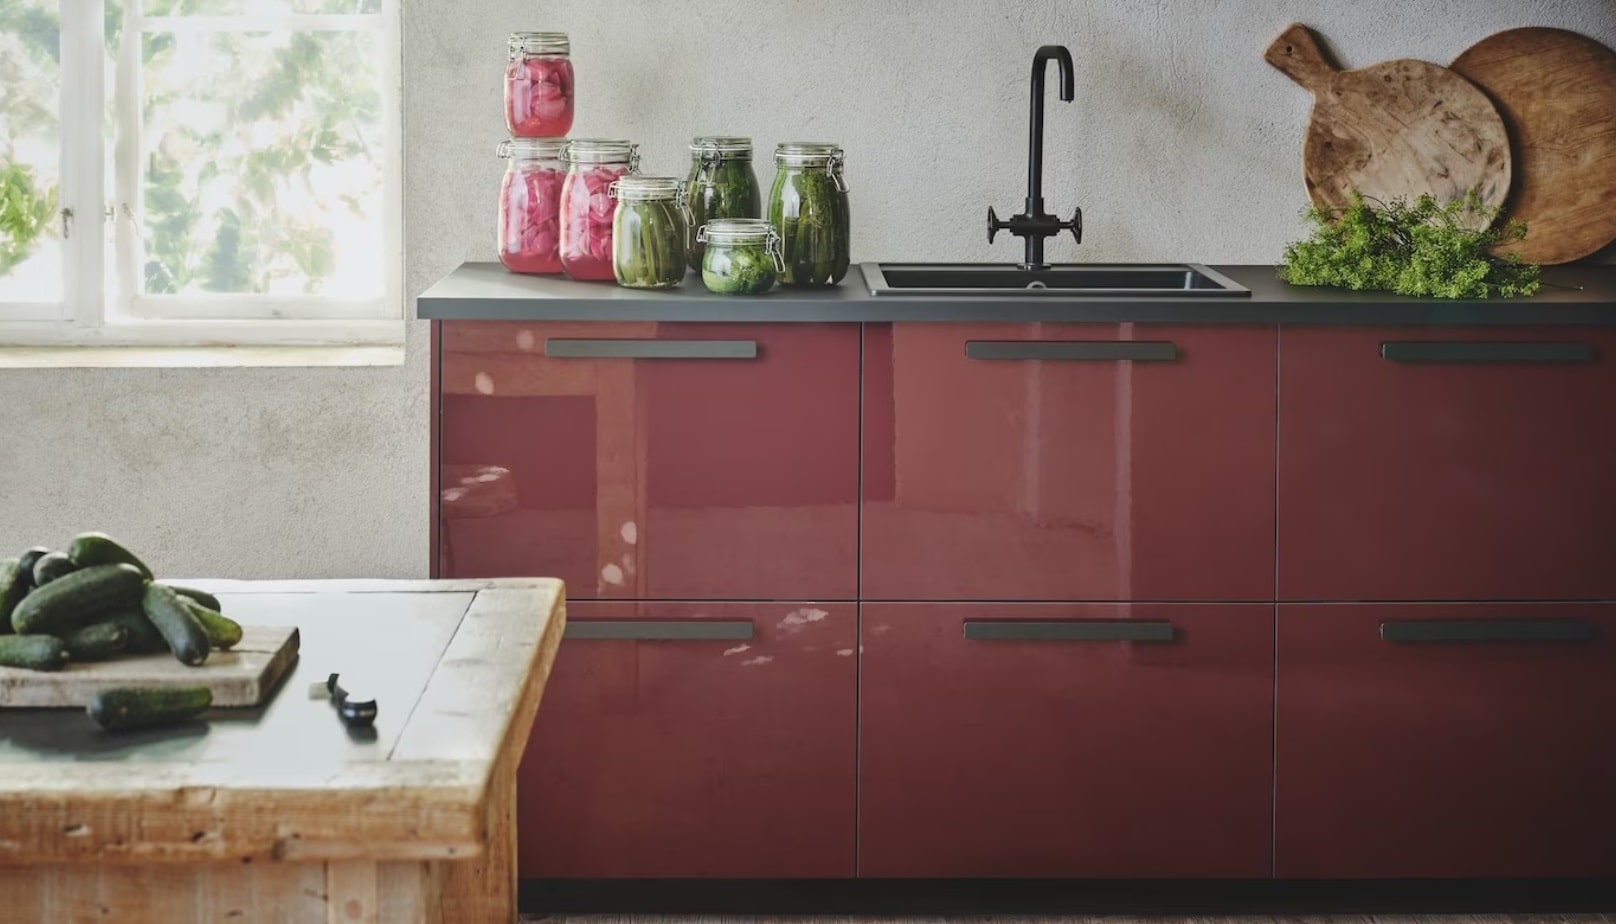 رنگ قرمز برای کابینت بزرگ آشپزخانه به سبک مدرن